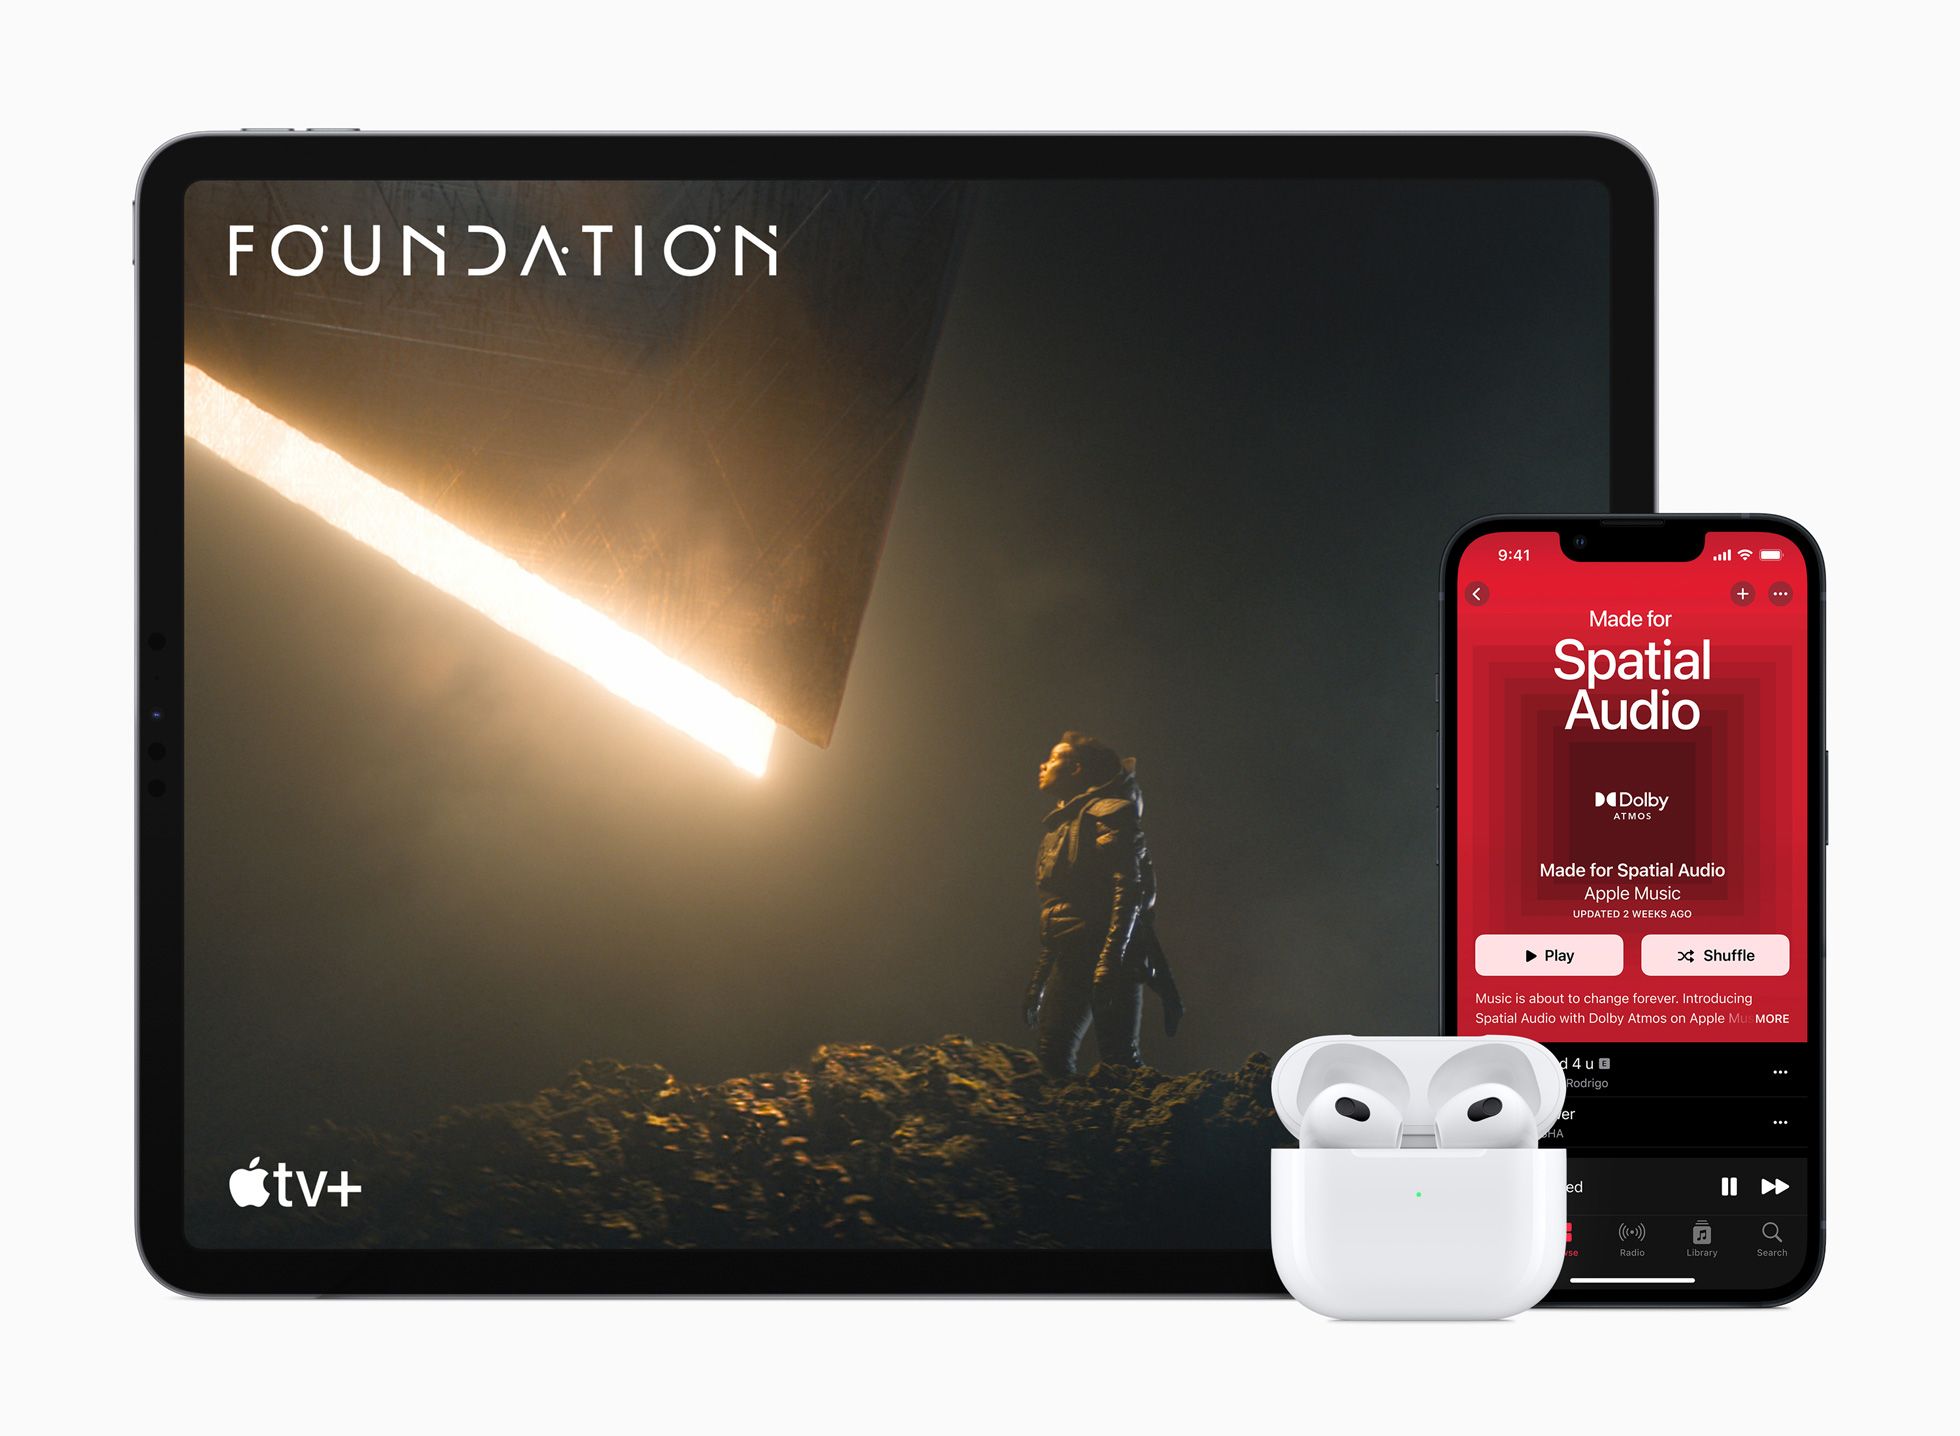 オーディオ機器 イヤフォン Apple AirPods Third Generation Review - $179 Heaphones Wear Test